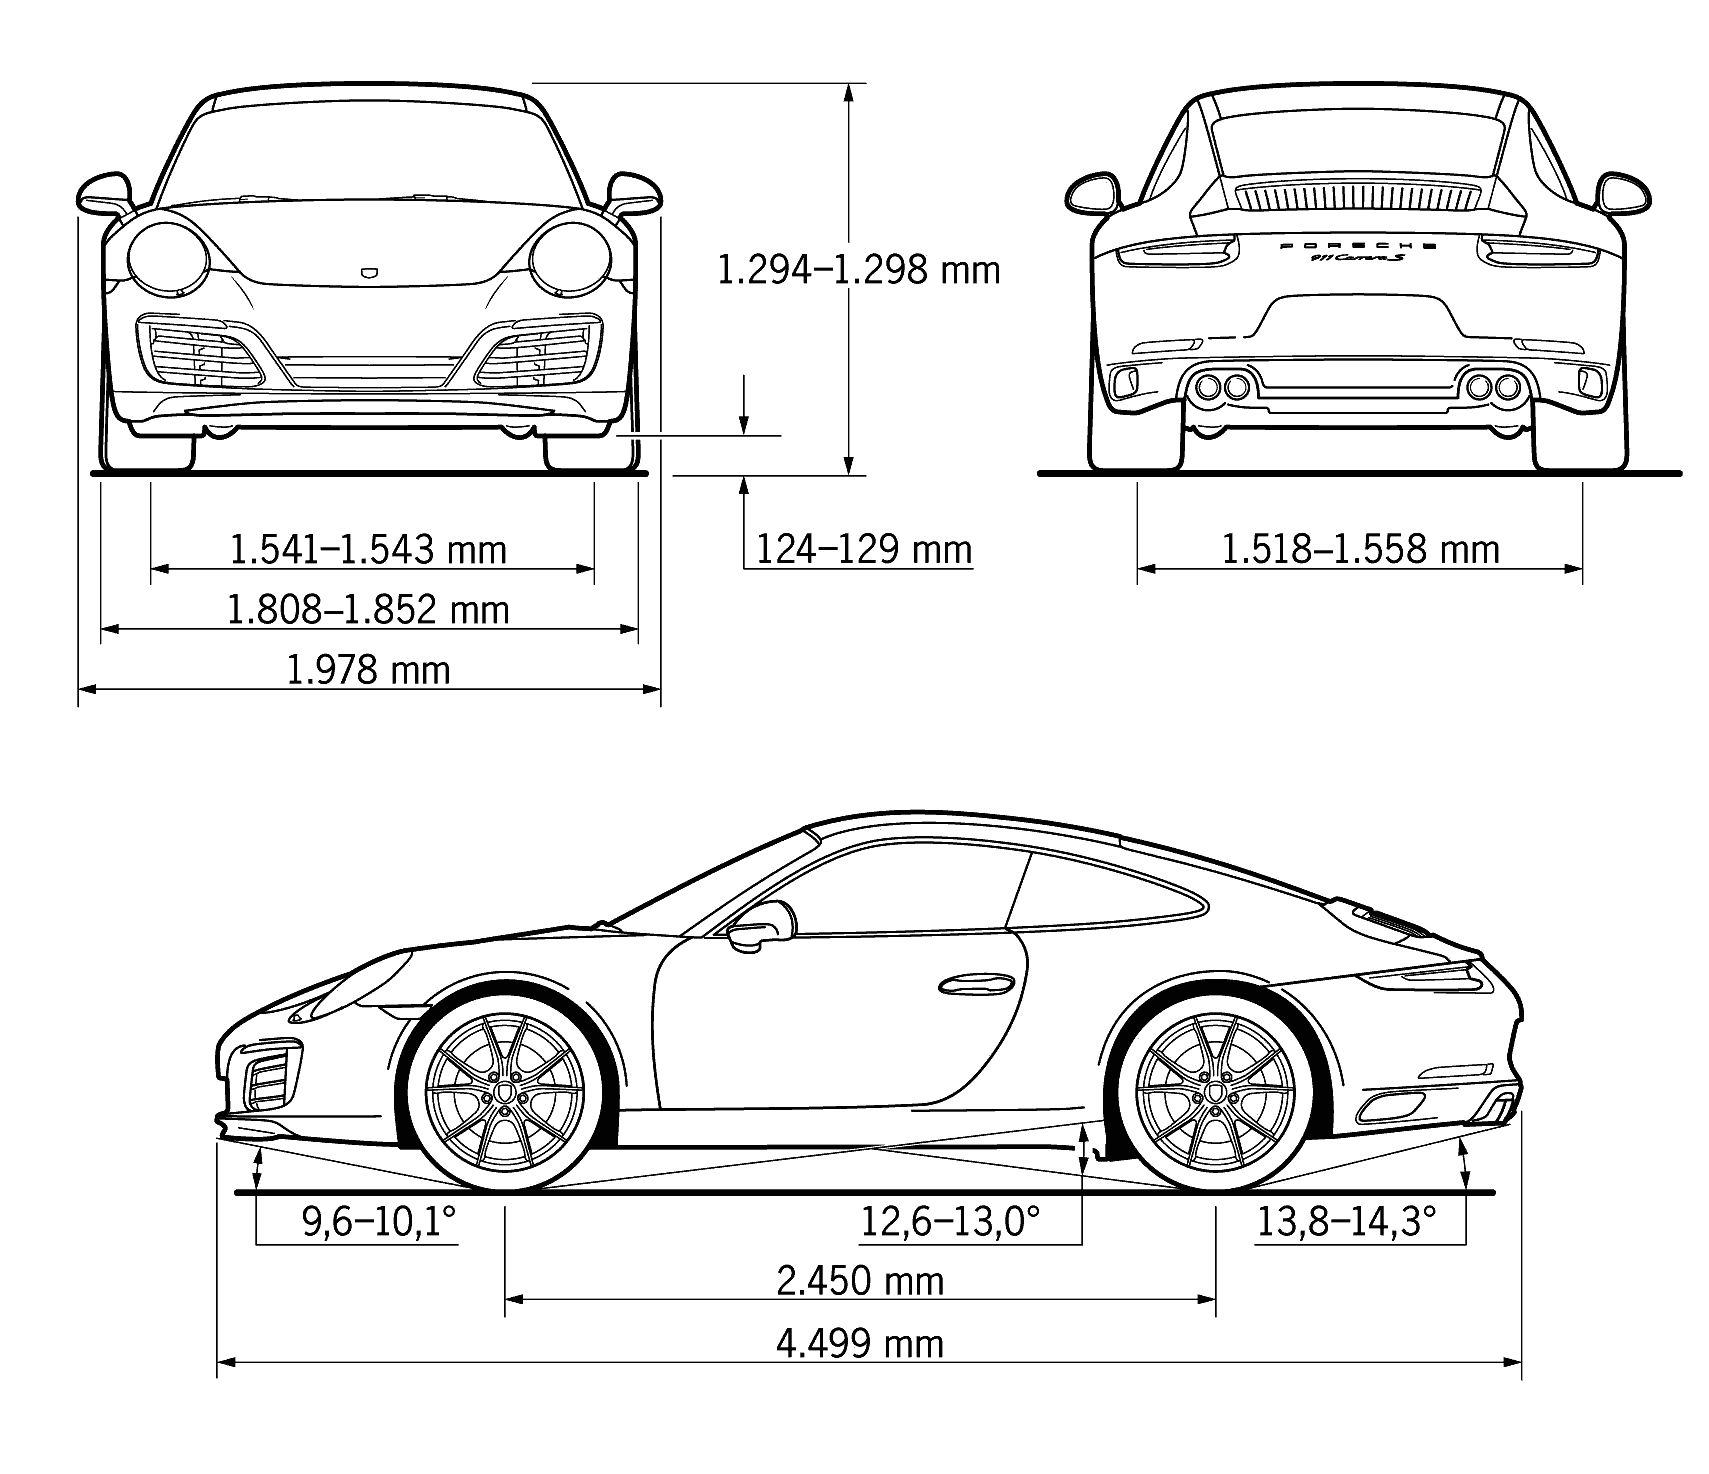 Porsche 911 Carrera S 2016 blueprint